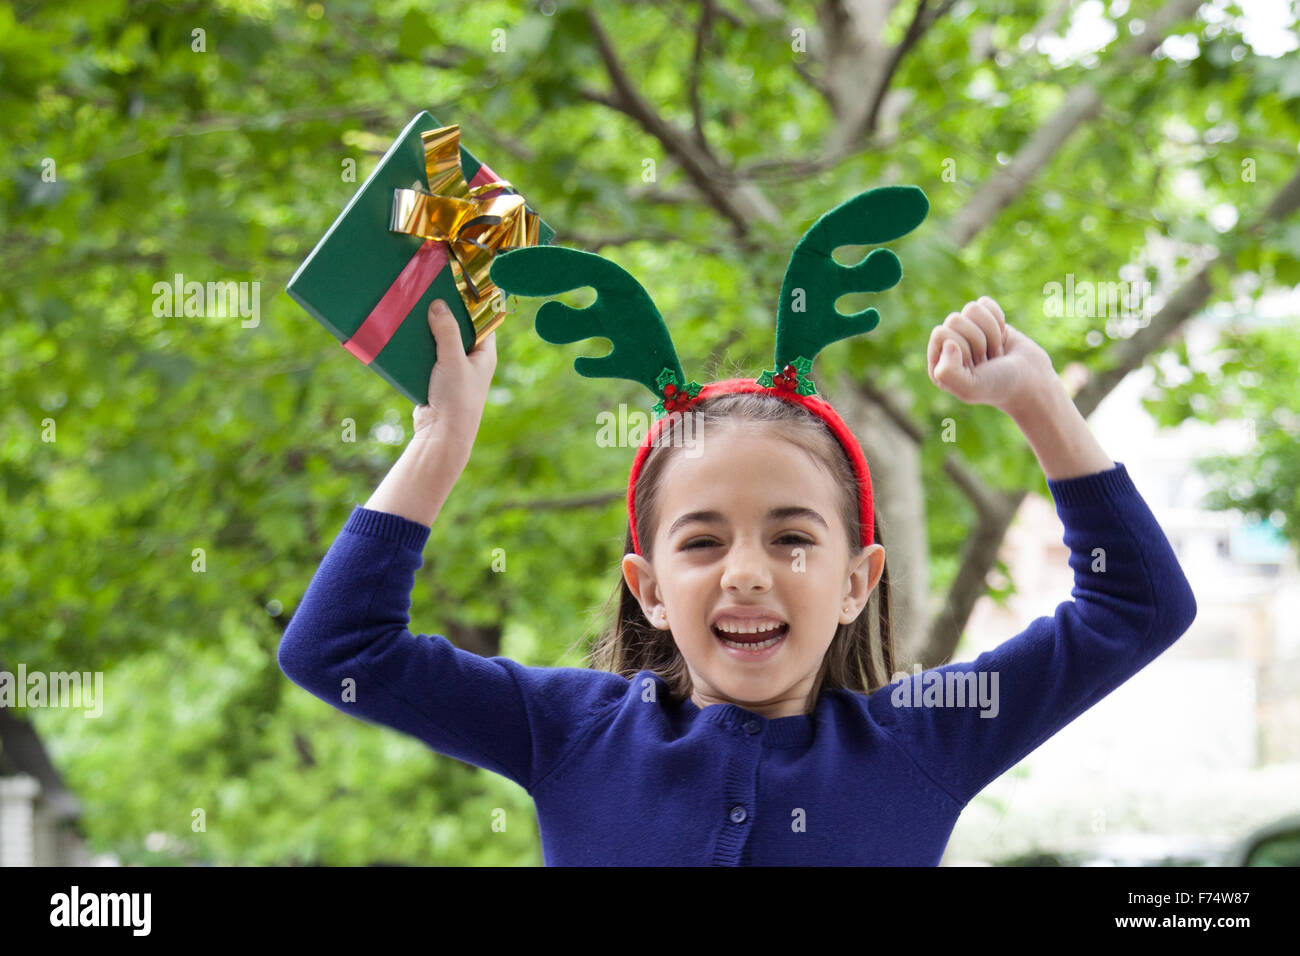 Little girl celebrating christmas Stock Photo